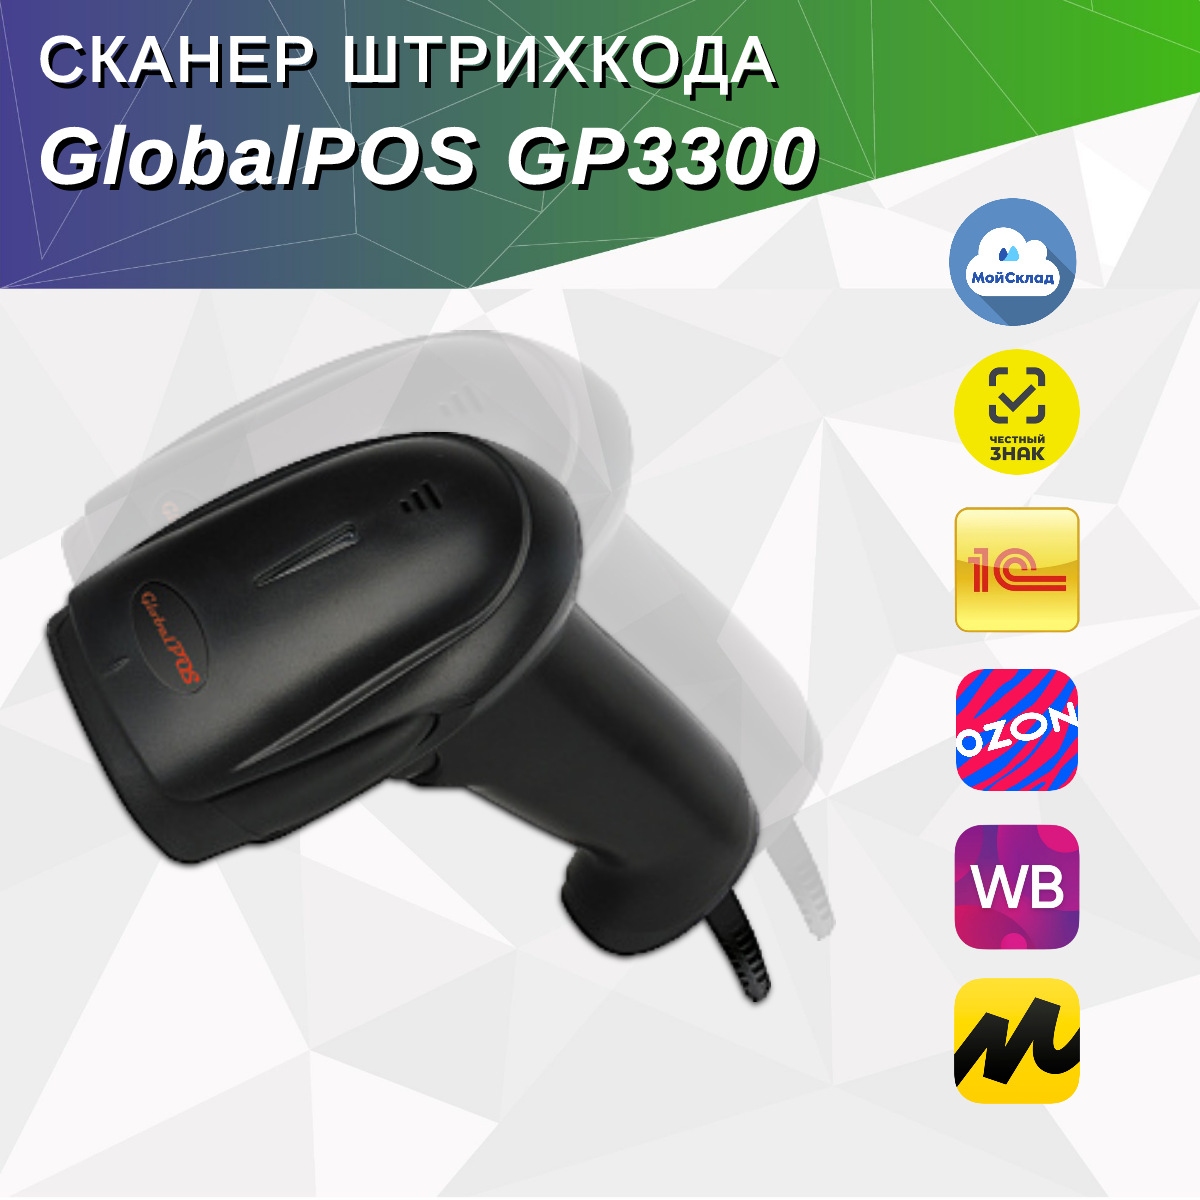 Сканер штрихкода GlobalPOS GP3300 2D, USB, черный